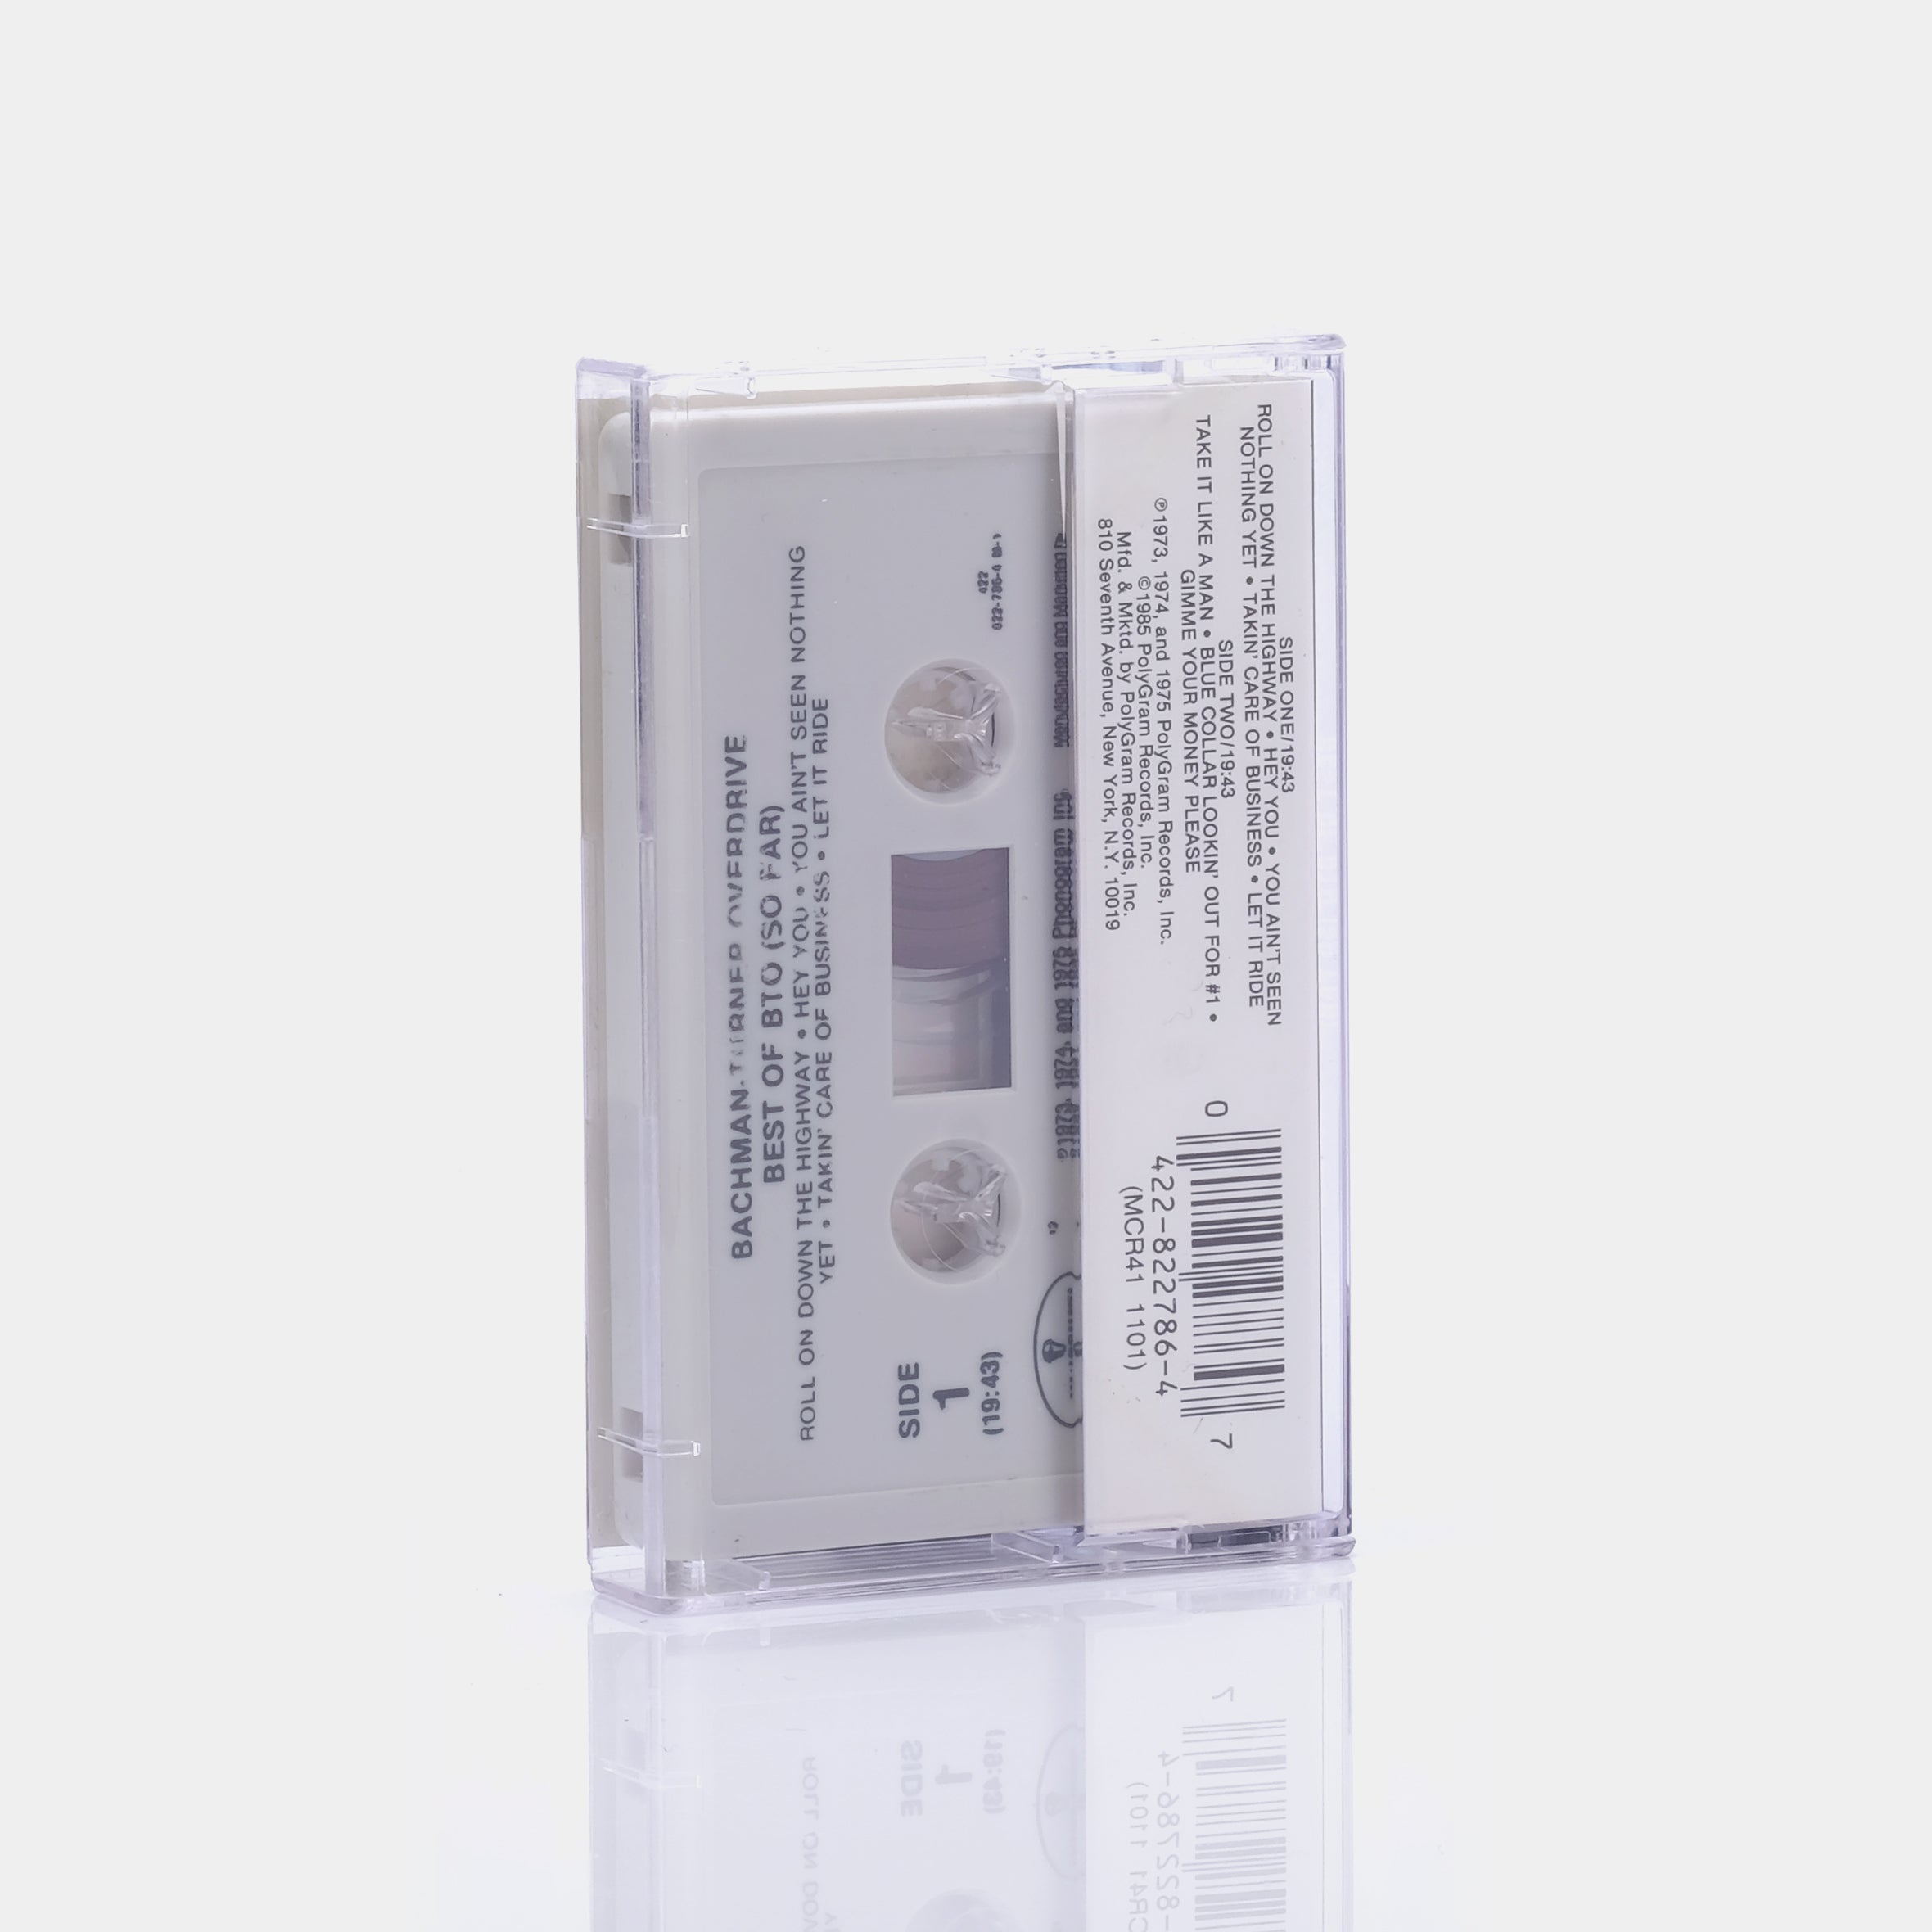 Bachman-Turner Overdrive - Best Of B.T.O (So Far) Cassette Tape